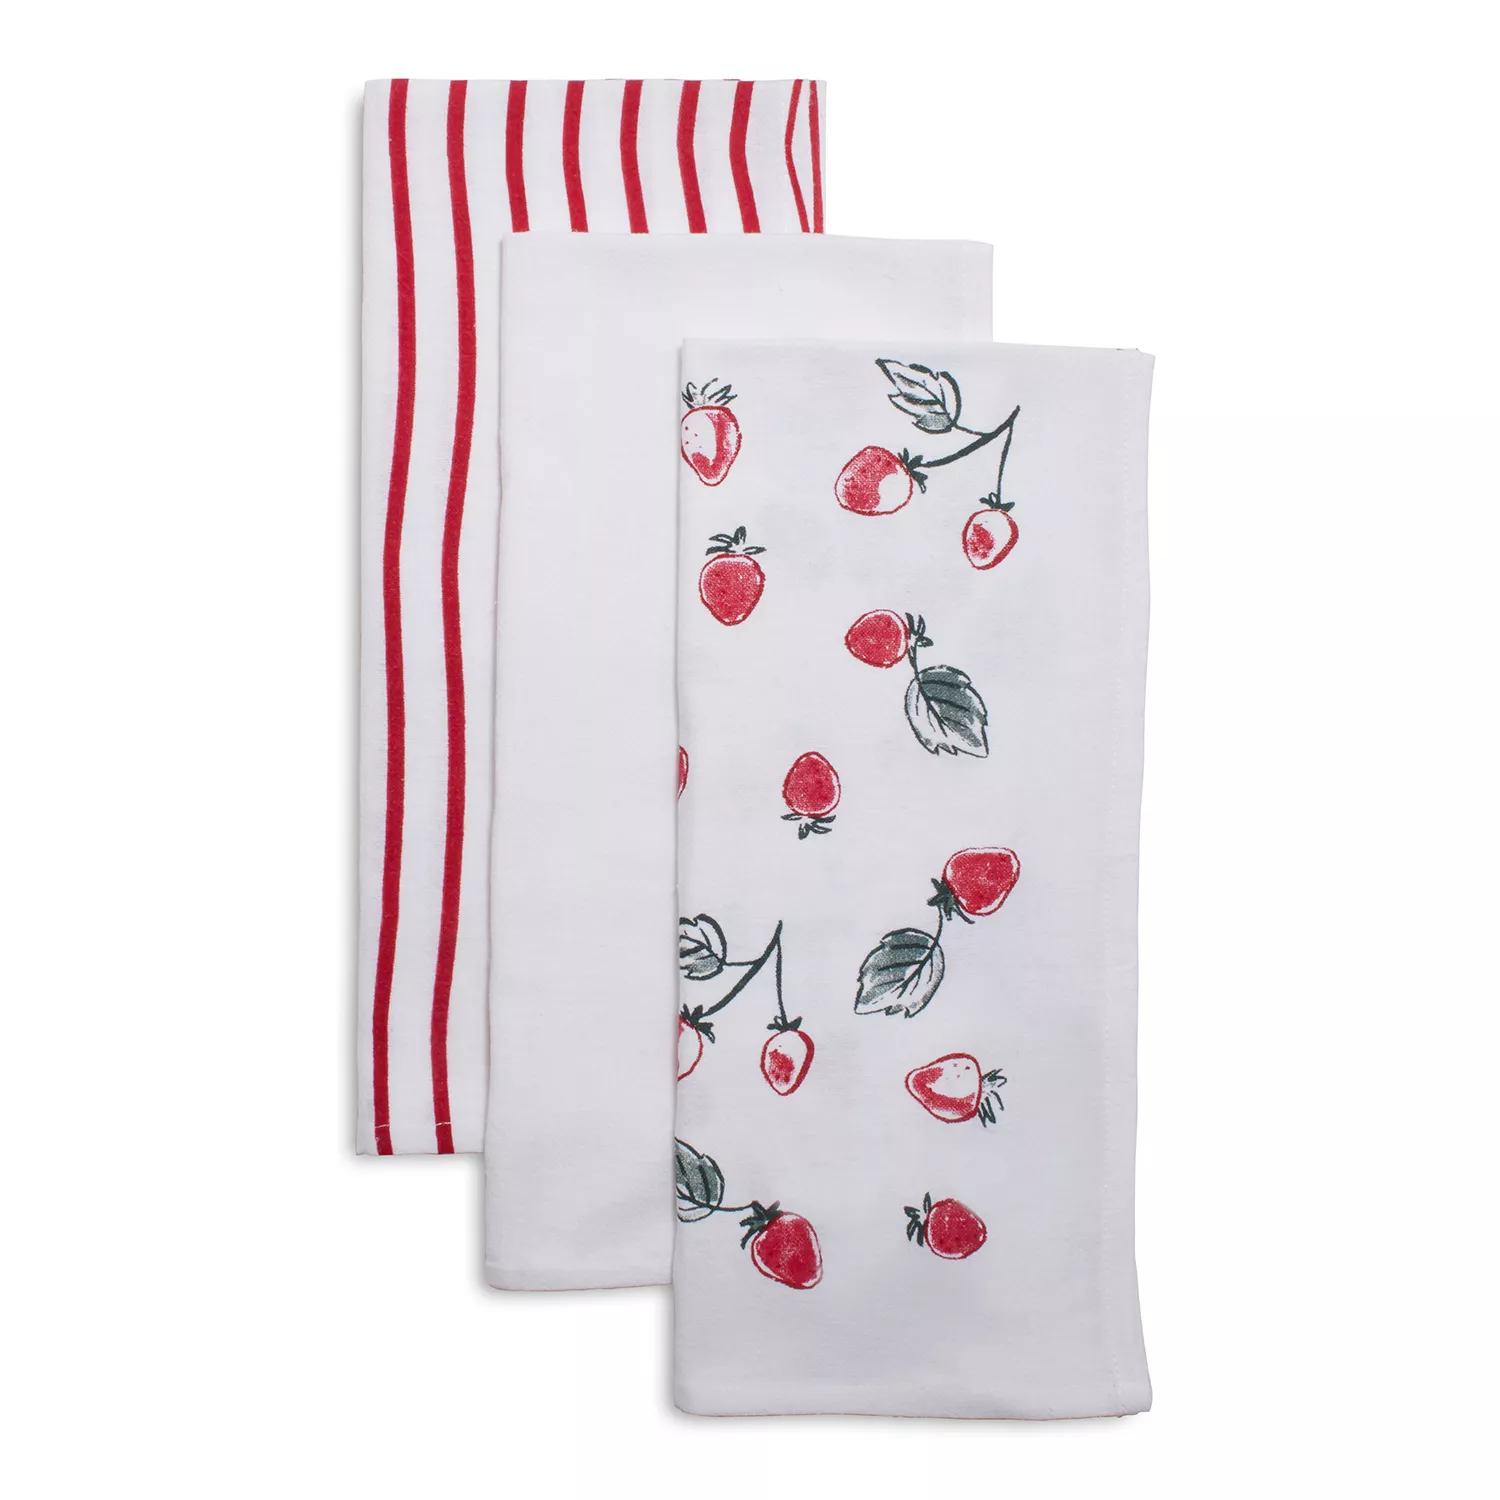 Sur La Table Striped Kitchen Towels, Set Of 3 – Second Chance Thrift Store  - Bridge